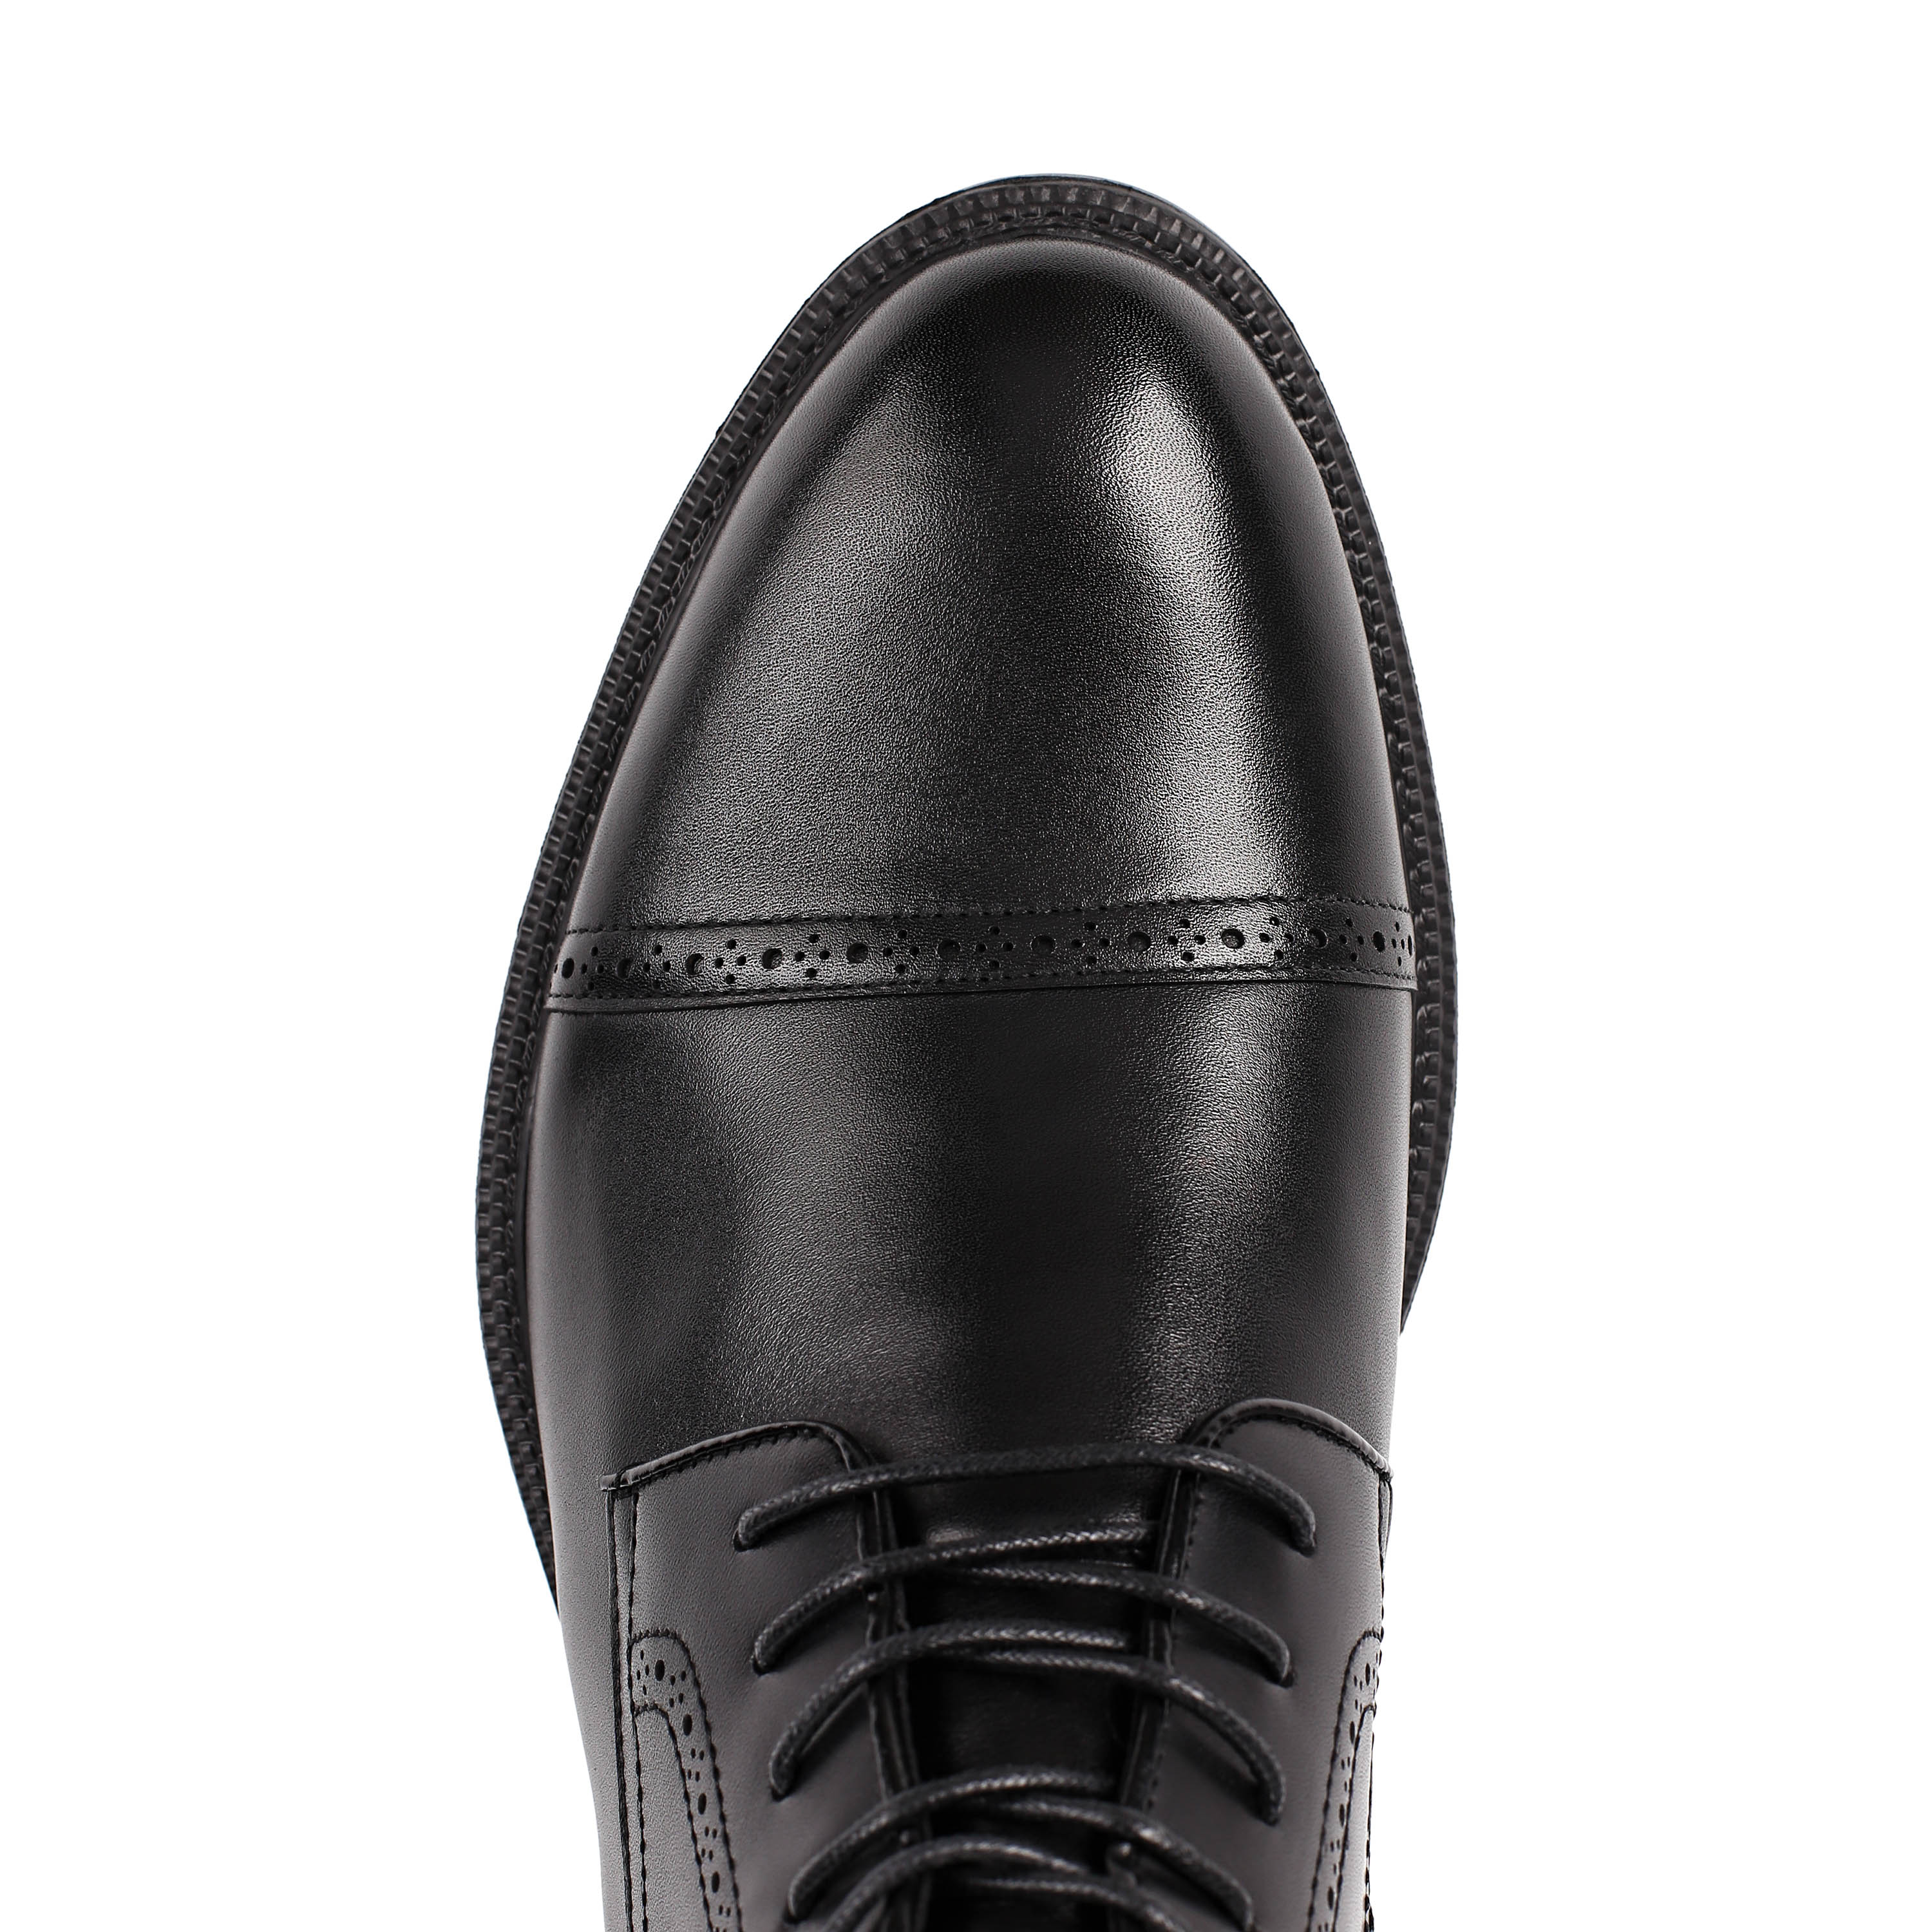 Ботинки Thomas Munz 073-383A-2102 073-383A-2102, цвет черный, размер 44 дерби - фото 5